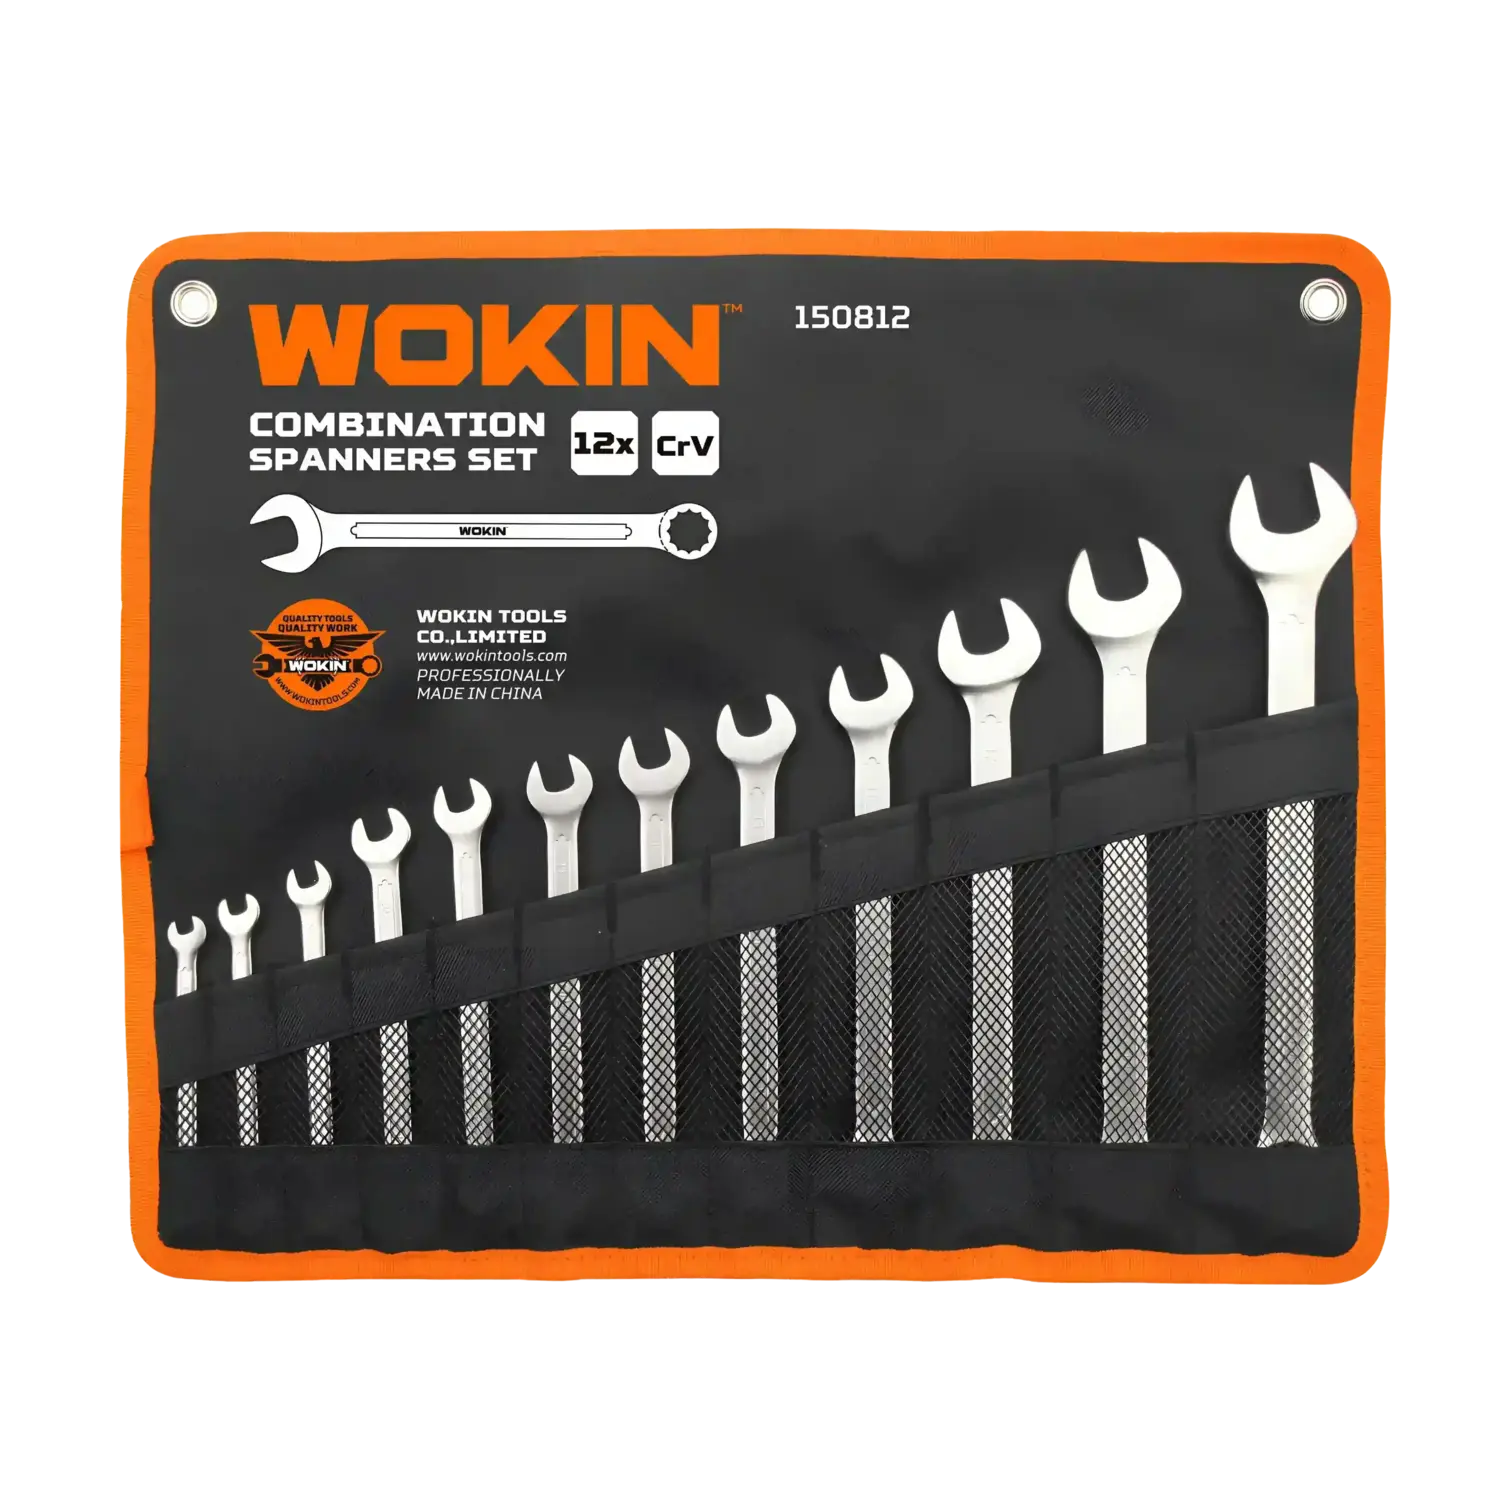 Wokin 150812, 12Pcs Combination Spanners Set